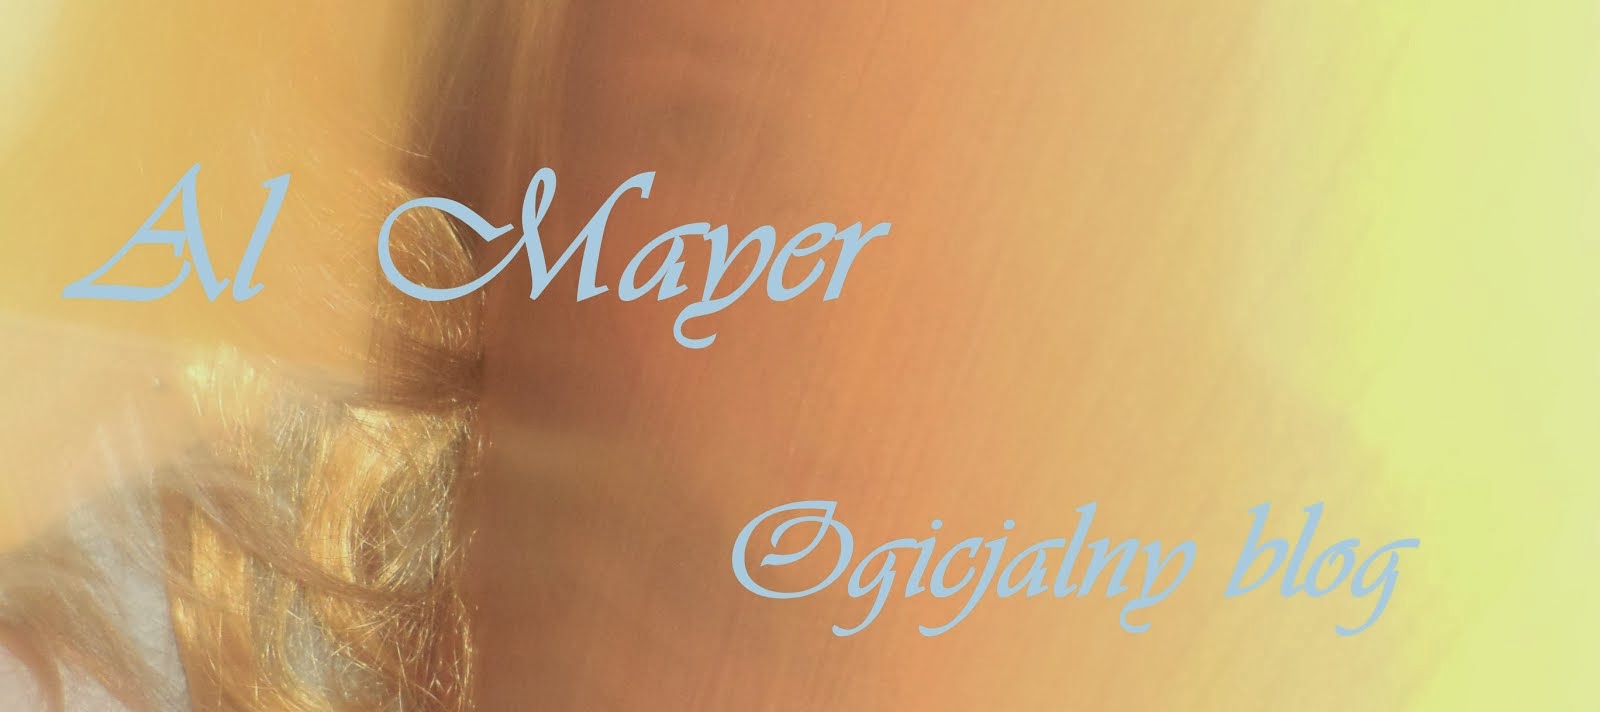 Al Mayer